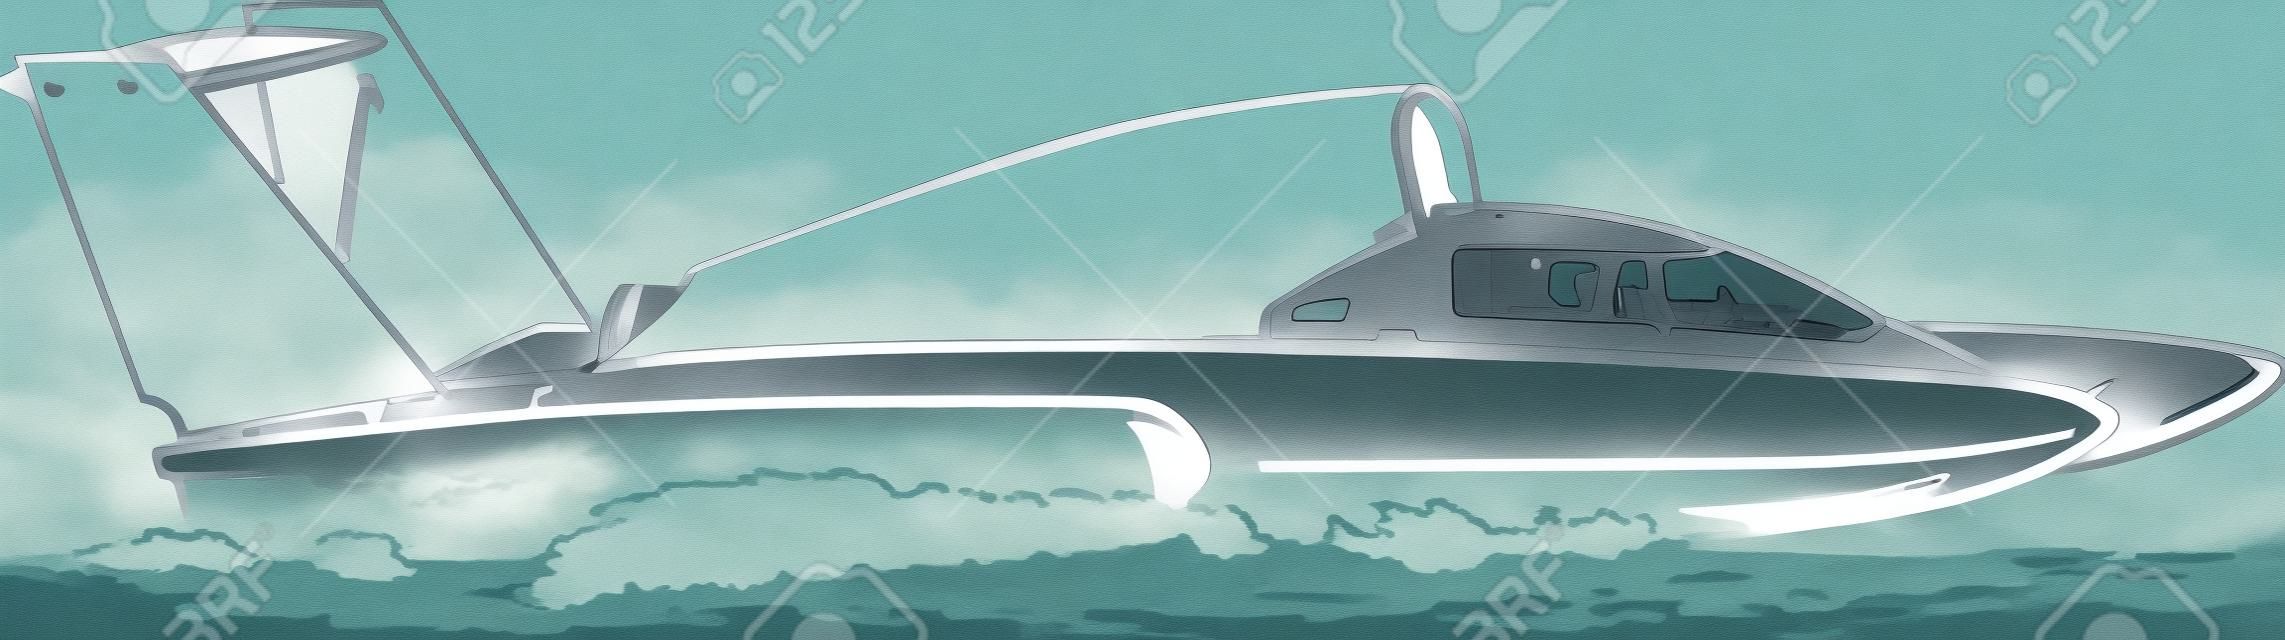 Иллюстрация на подводных крыльях